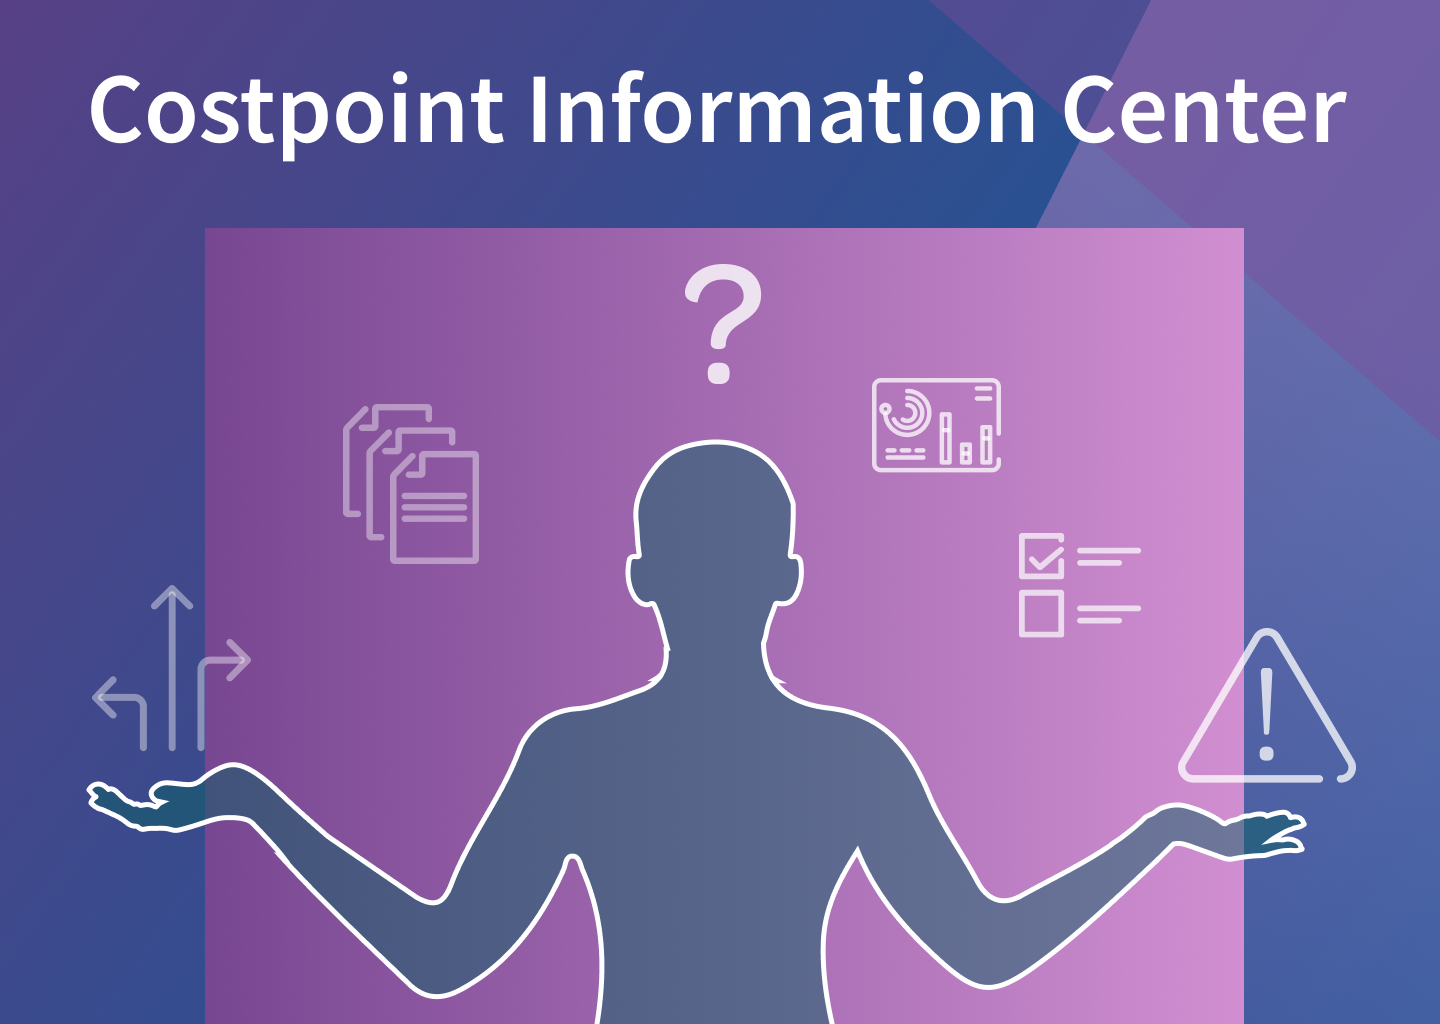 Costpoint Information Center